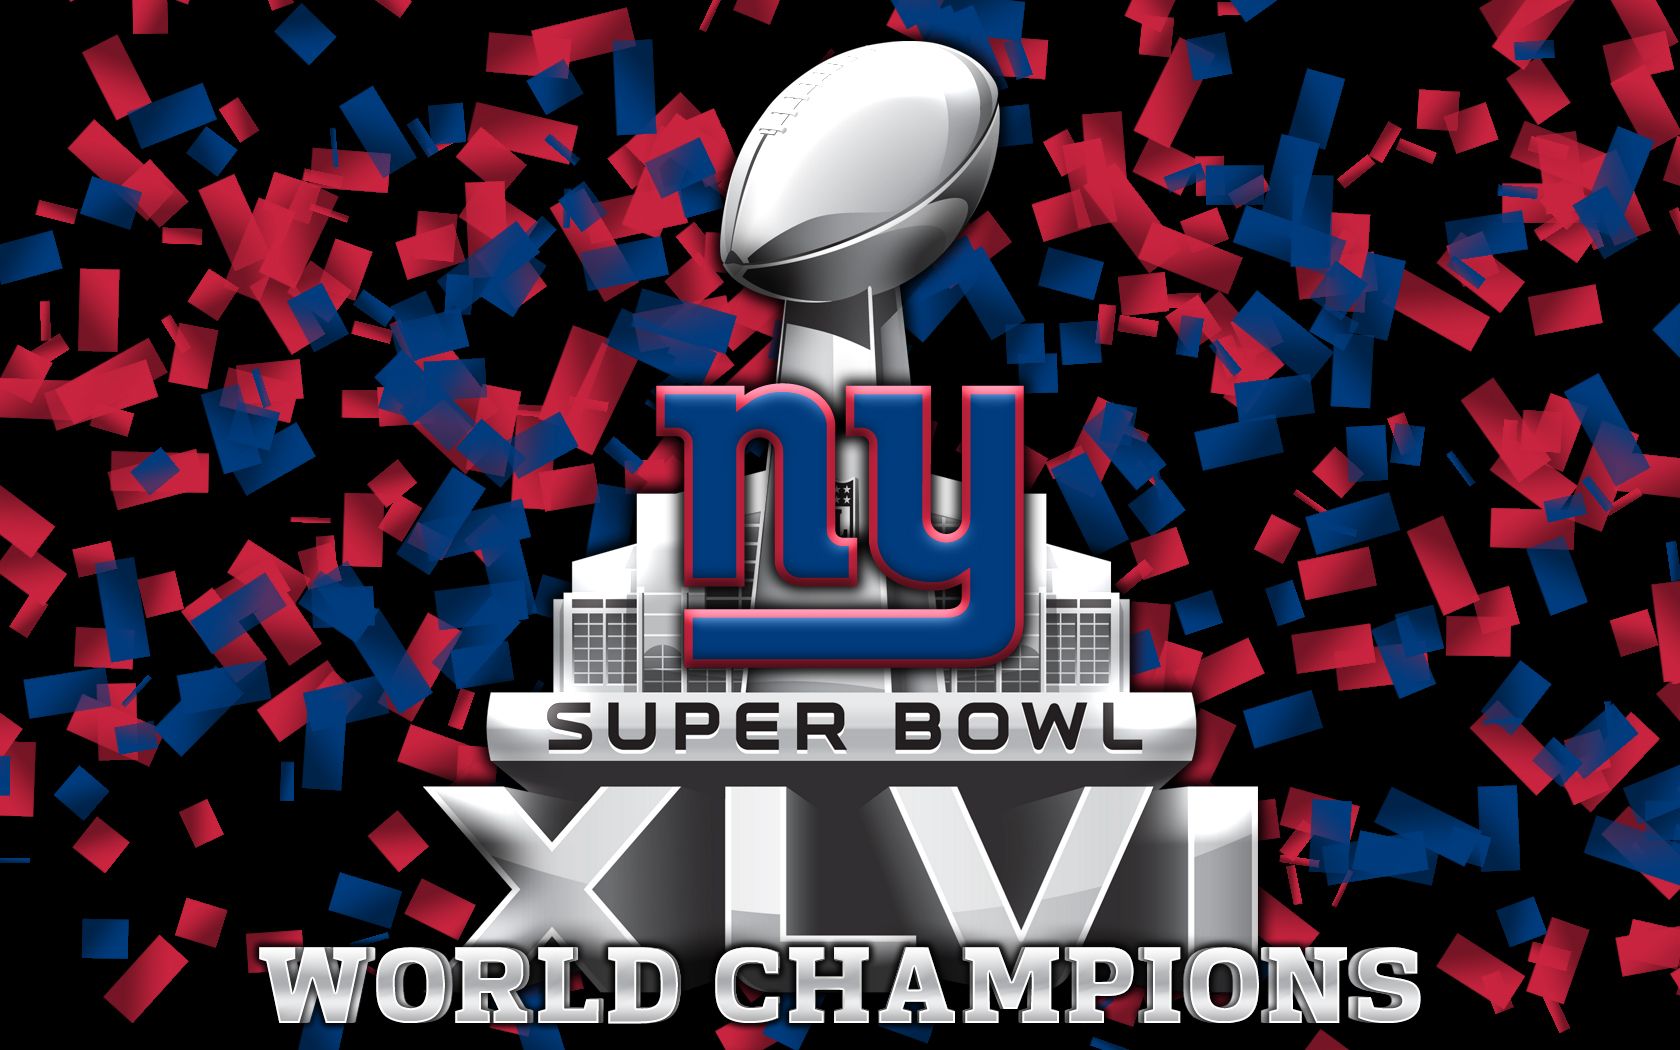 Free download New York Giants desktop wallpaper New York Giants